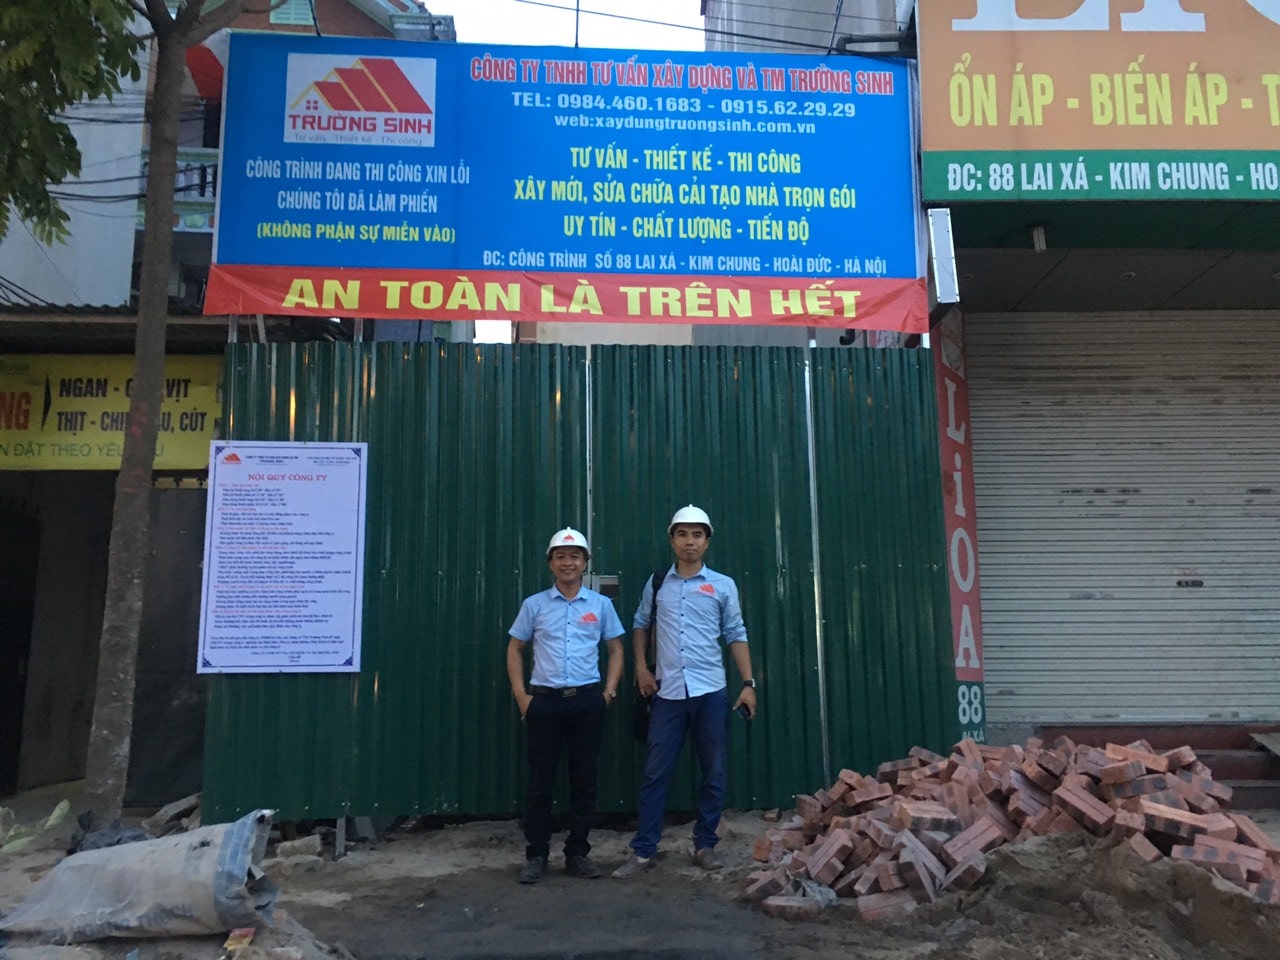 Sửa nhà trọn gói tại Hà Nội, kinh nghiệm xương máu sửa chữa cải tạo nhà ở-4